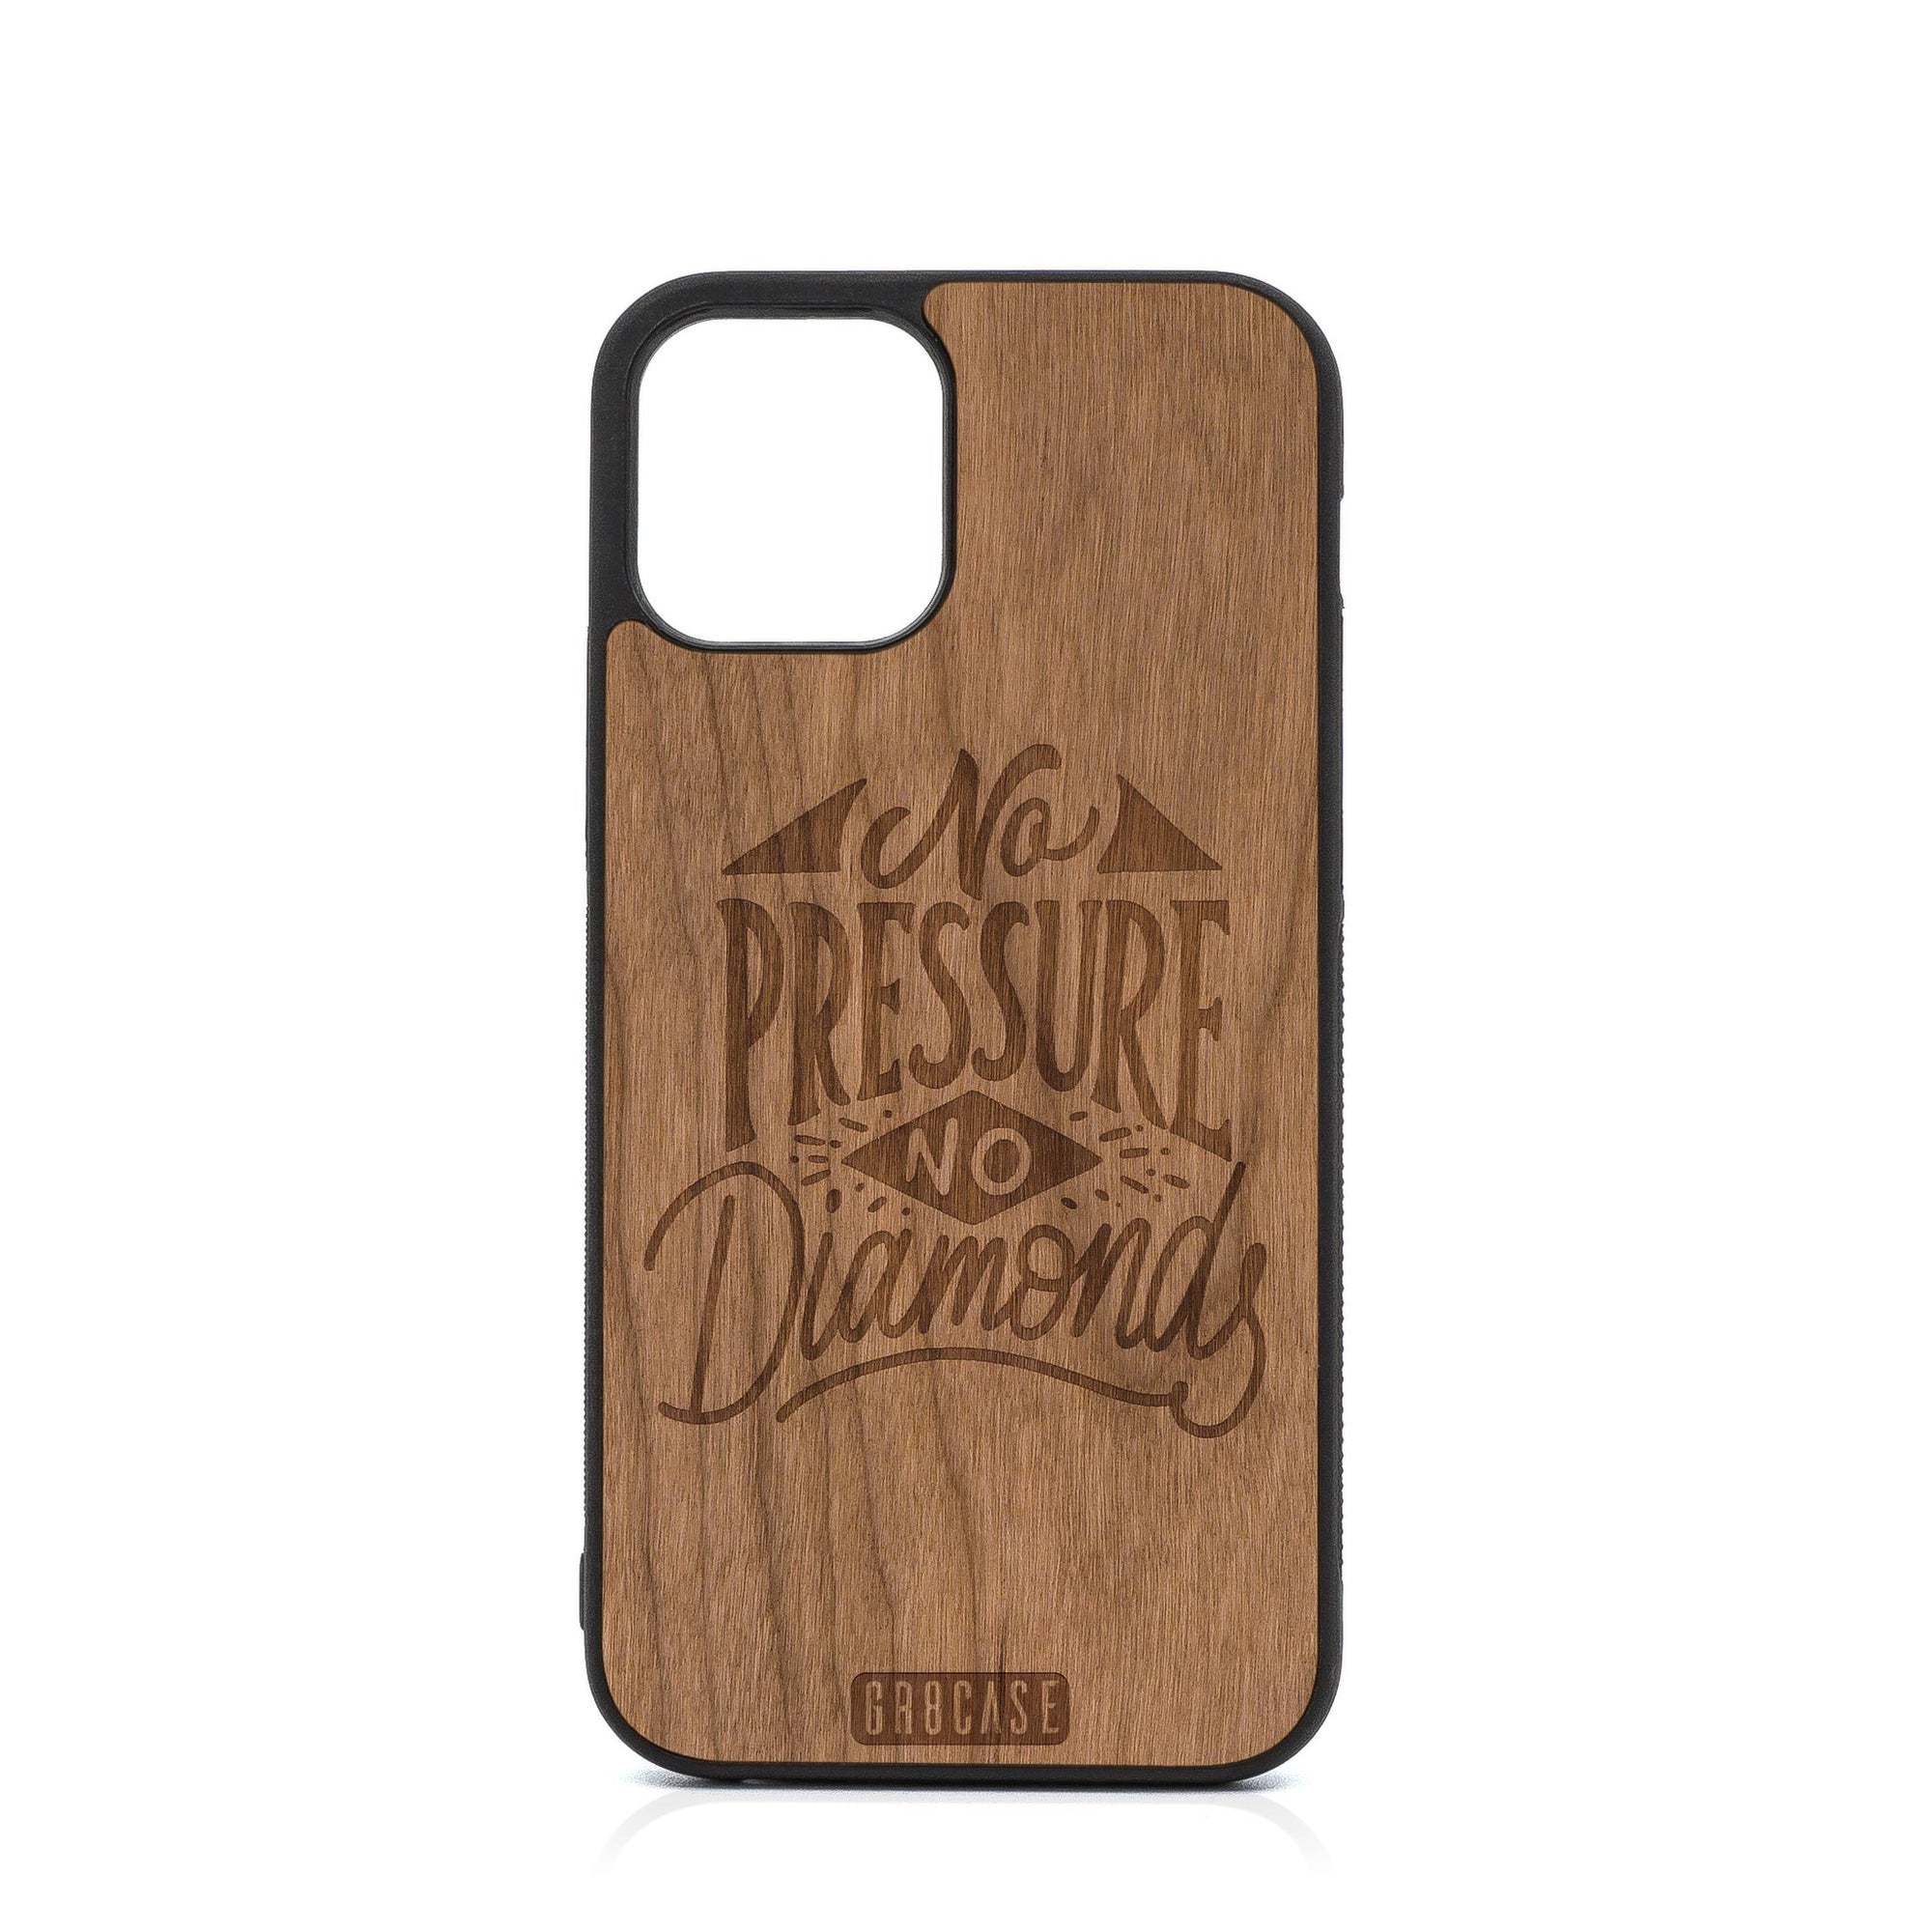 No Pressure No Diamonds Design Wood Case For iPhone 12 Pro